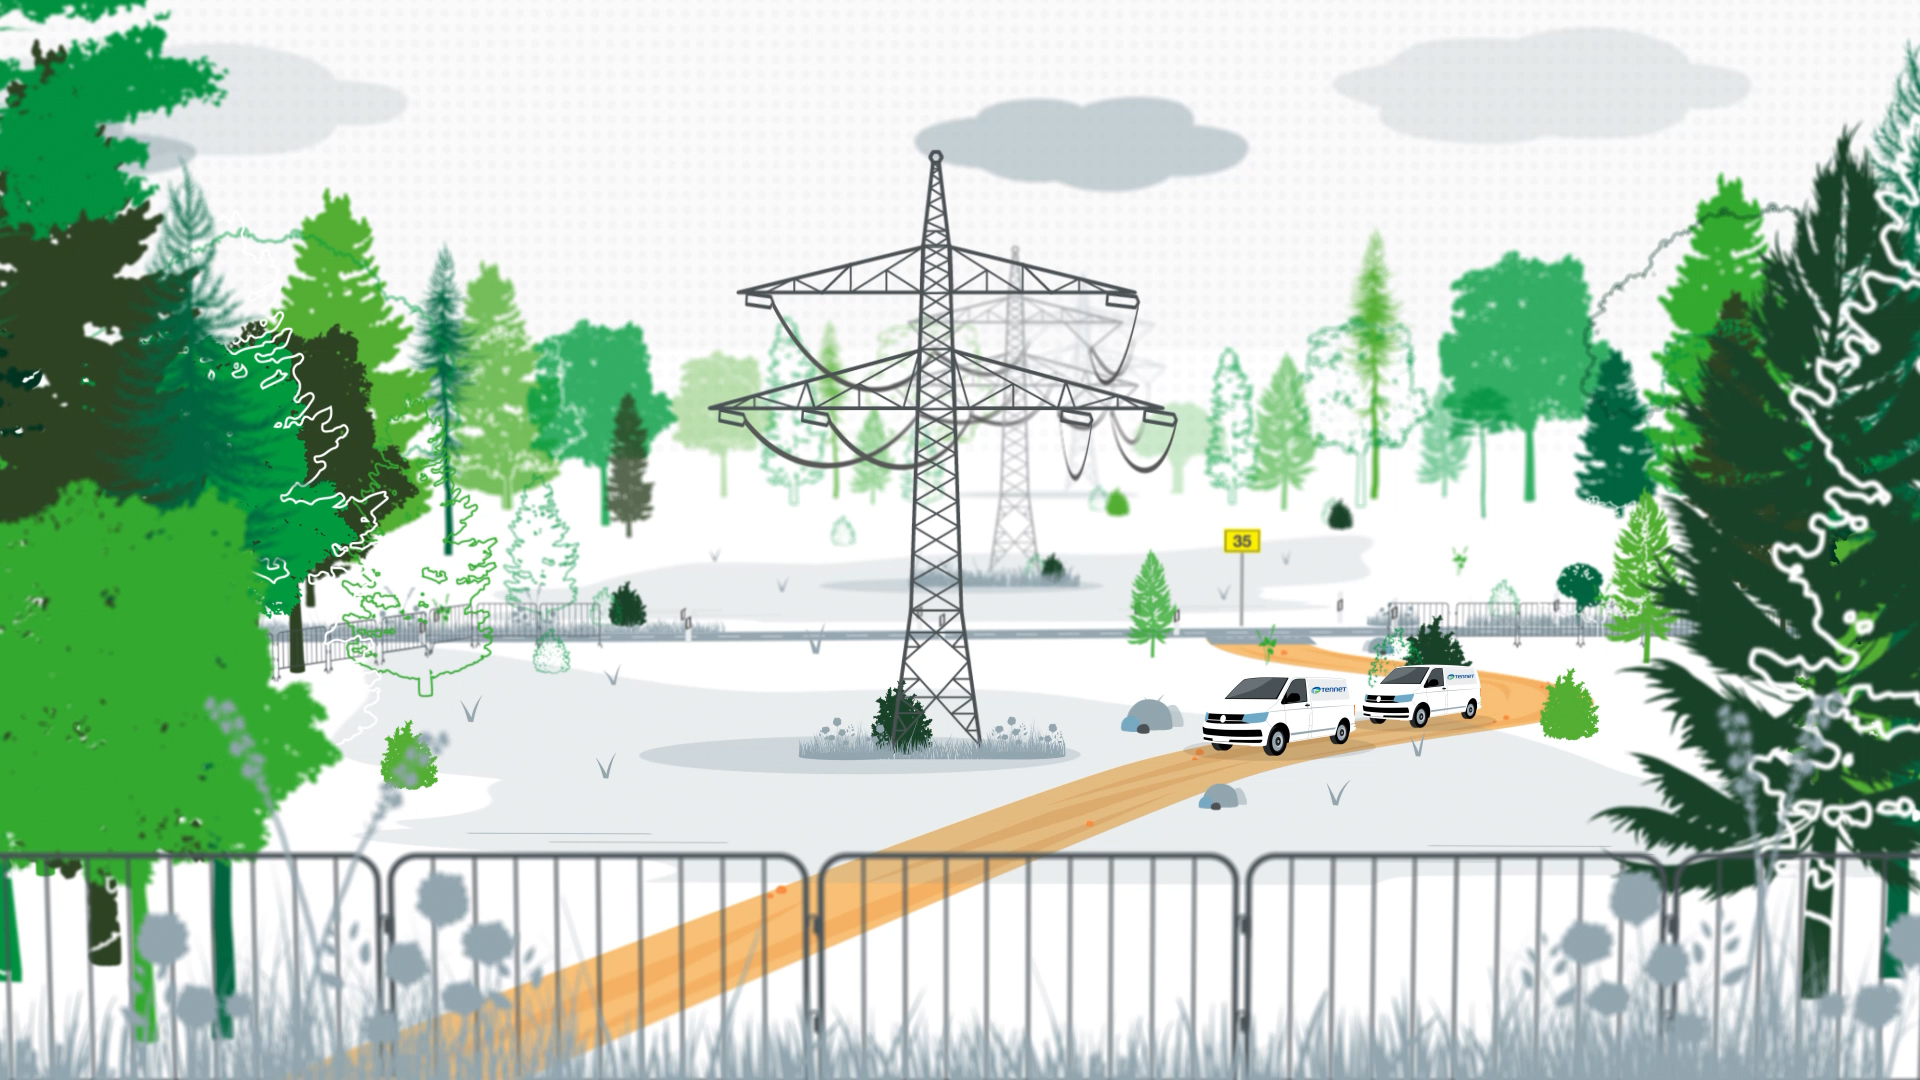 Eine Freileitung steht im Wald und wurde umzäunt. Autos der Baufirma befinden sich rechts daneben auf einem Waldpfad. Thumbnail einer Animation eines Erklärvideos für die Tennet GmbH.